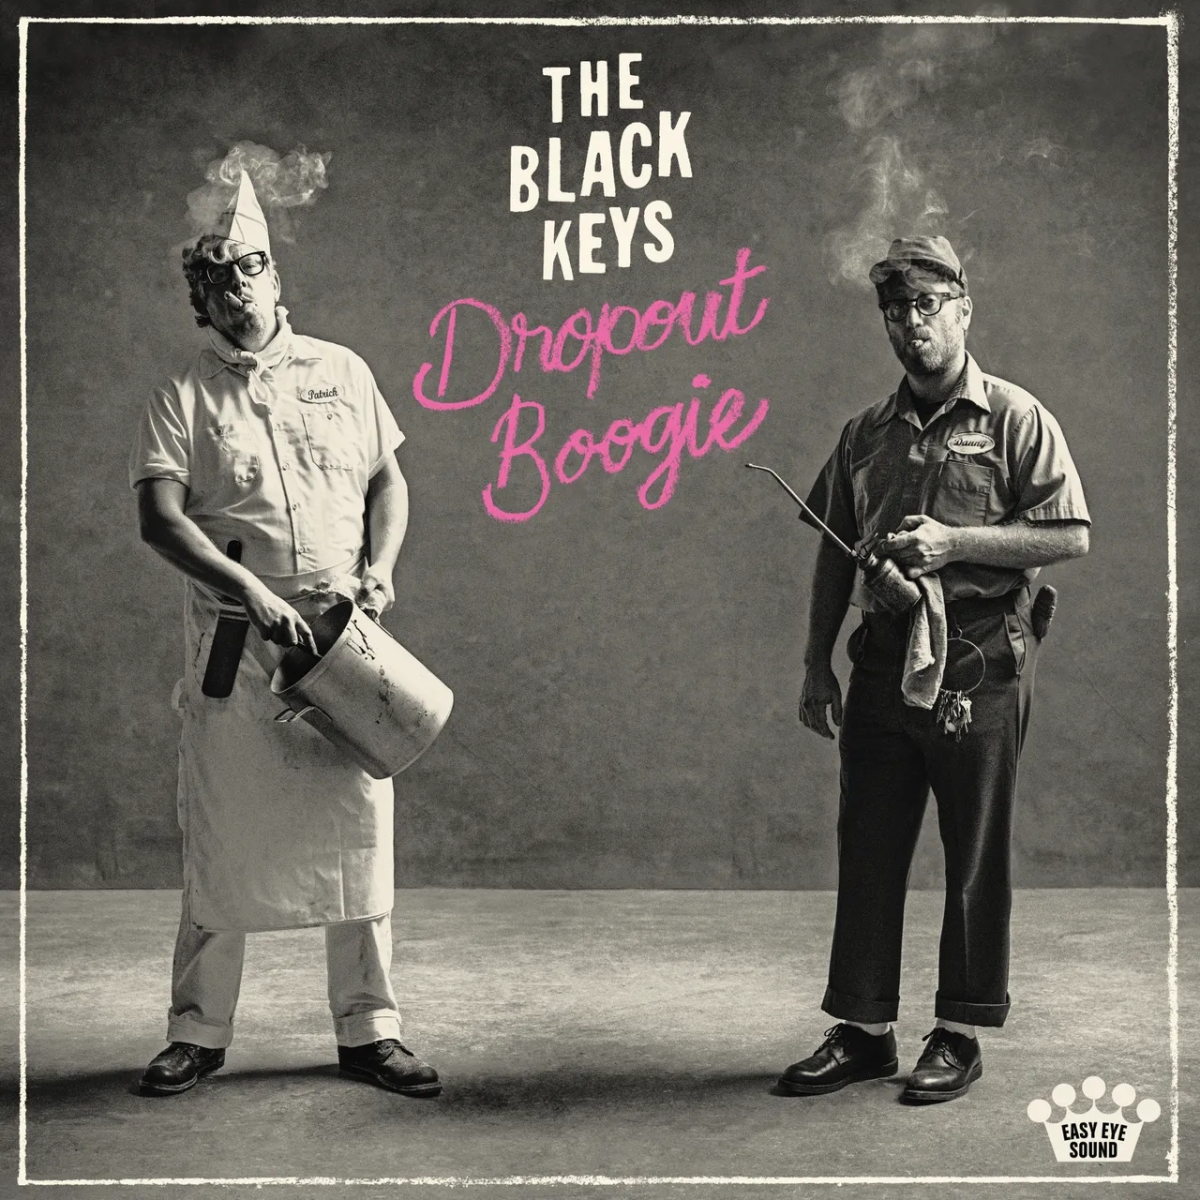 Disco 245 - Semana 38 - De 21 a 28 de setembro de 2022 - The Black Keys - Dropout Boogie The-black-keys-dropout-boogie_album